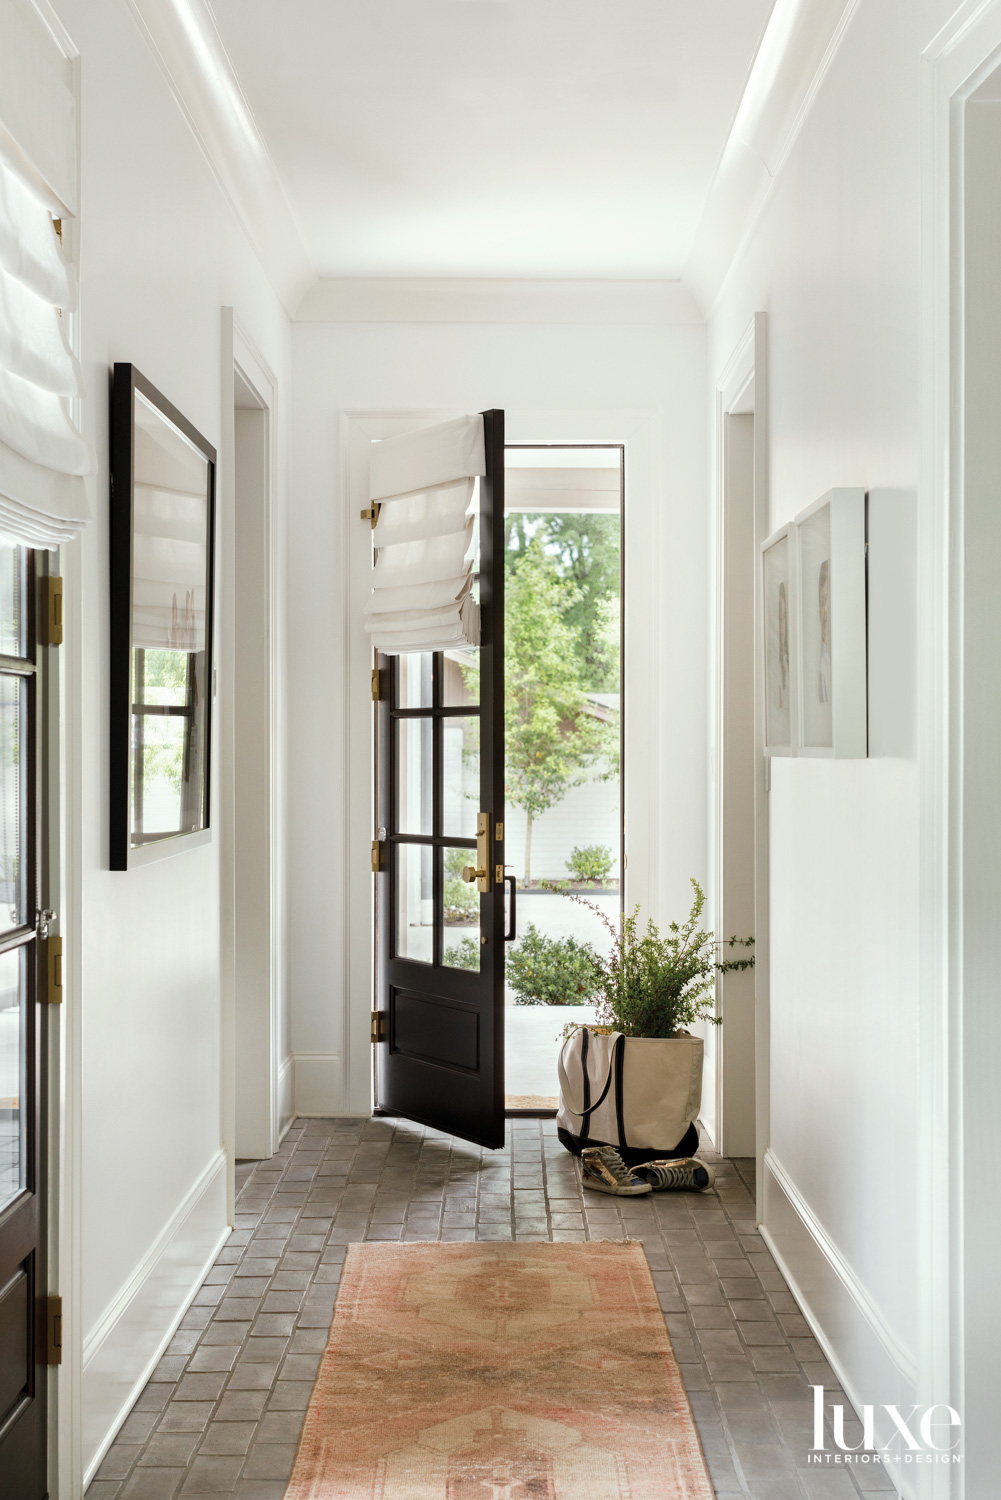 Hallway with white walls and open door